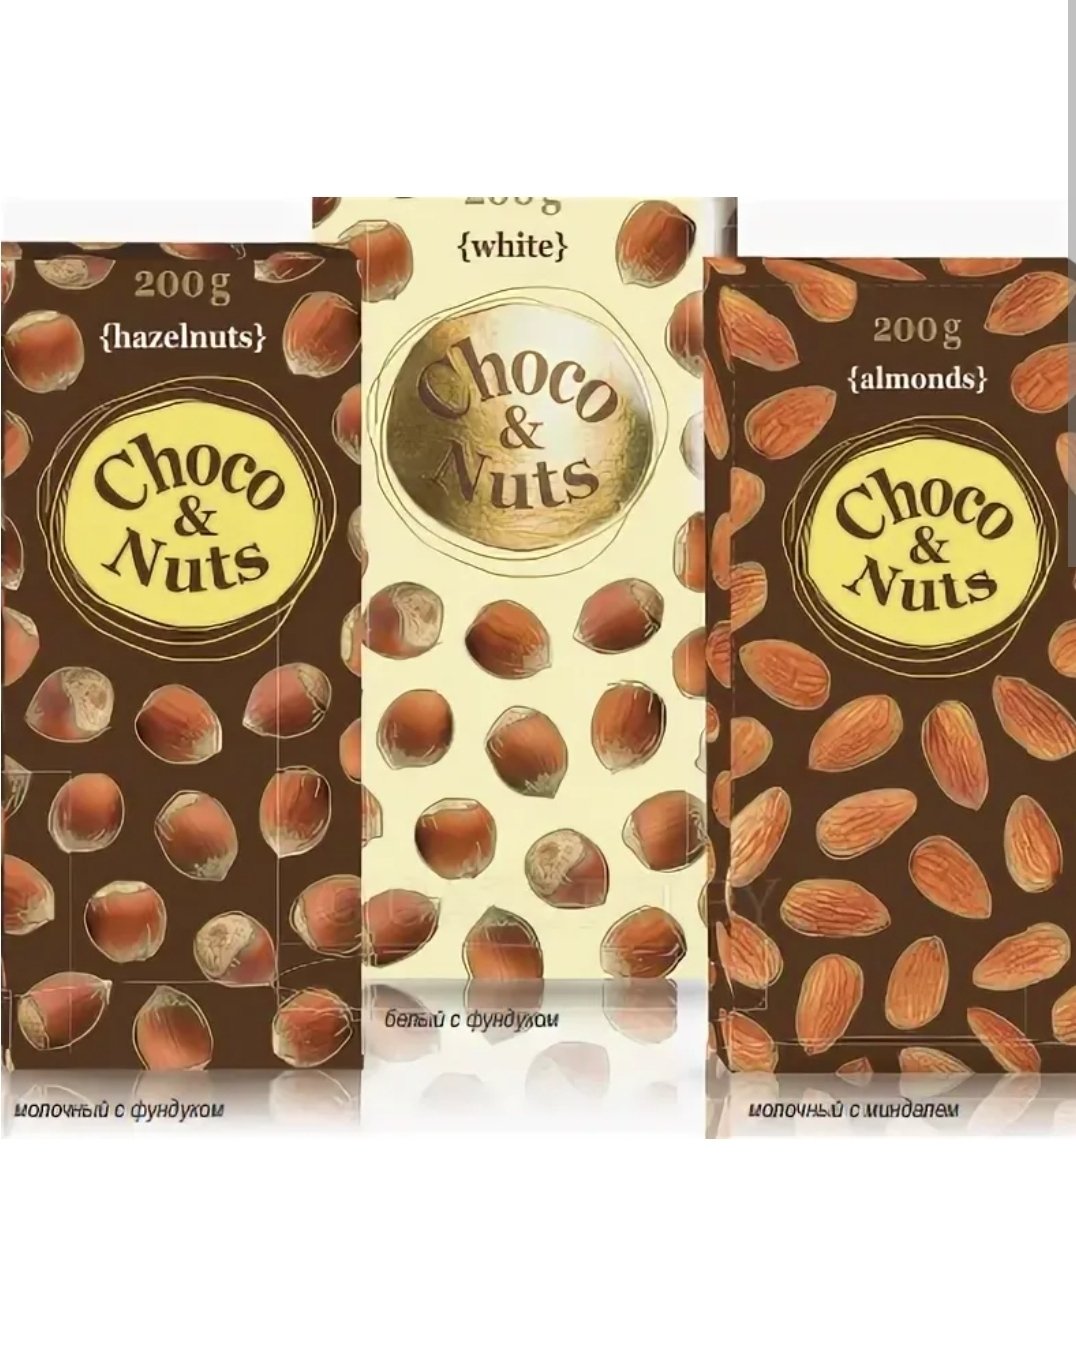 Нат энд гоу. Choco Nuts 200g с фундуком. Шоколад Чоко энд натс молочный с цельным миндалем 200 г. Шоколад французский Choco Nuts. Choco Nuts 200g белый с фундуком.